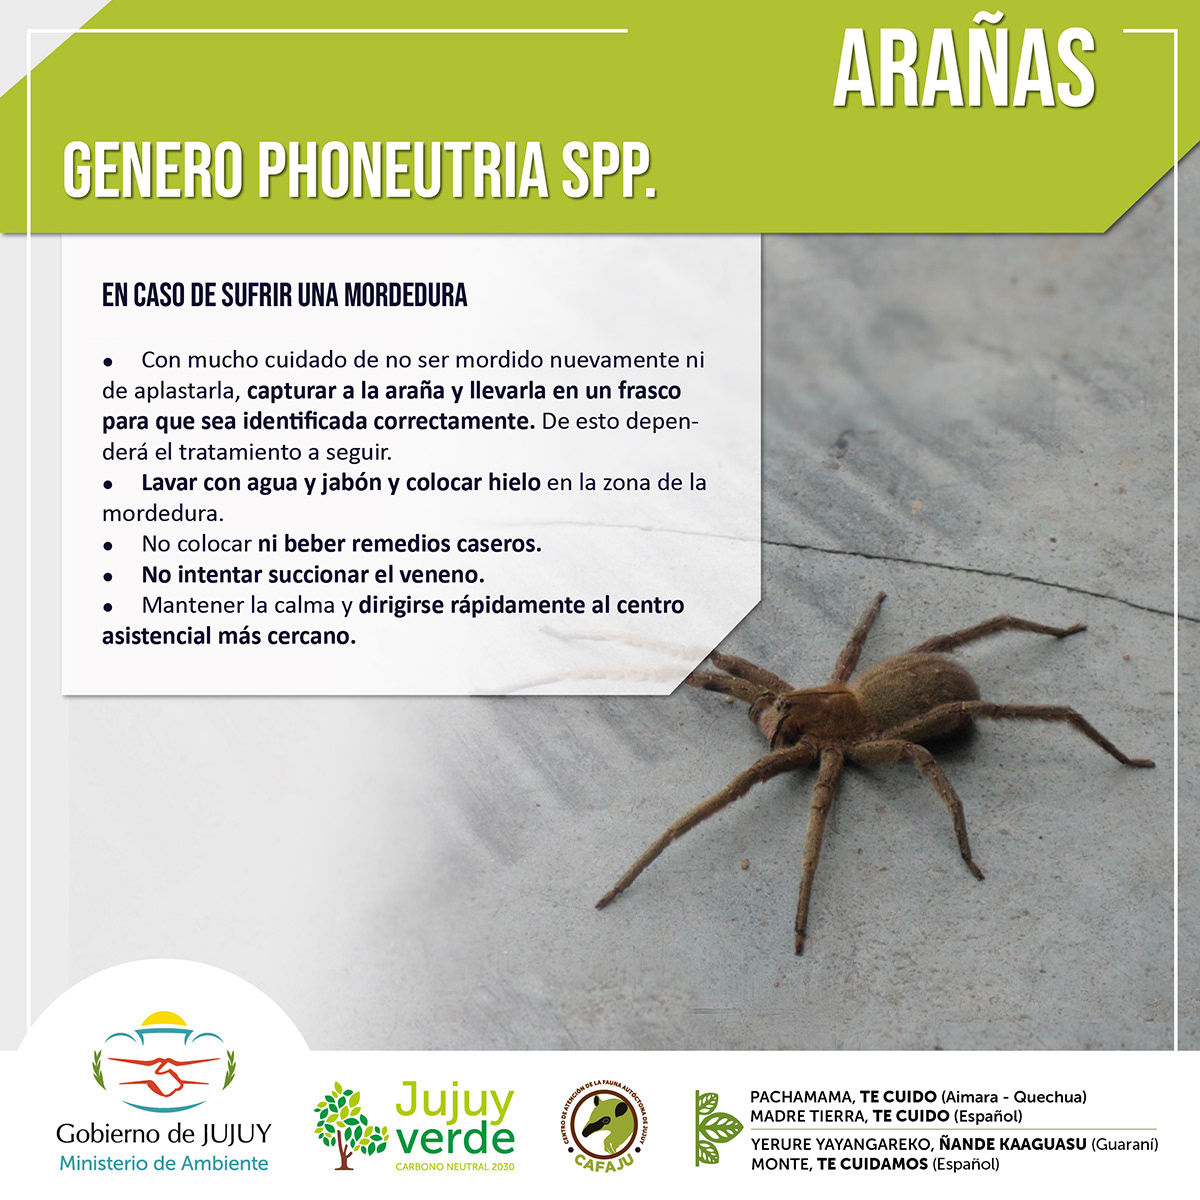 Alacranes arañas argentina bichos peligrosos diseño gráfico flyers norte argentino redes sociales serpientes